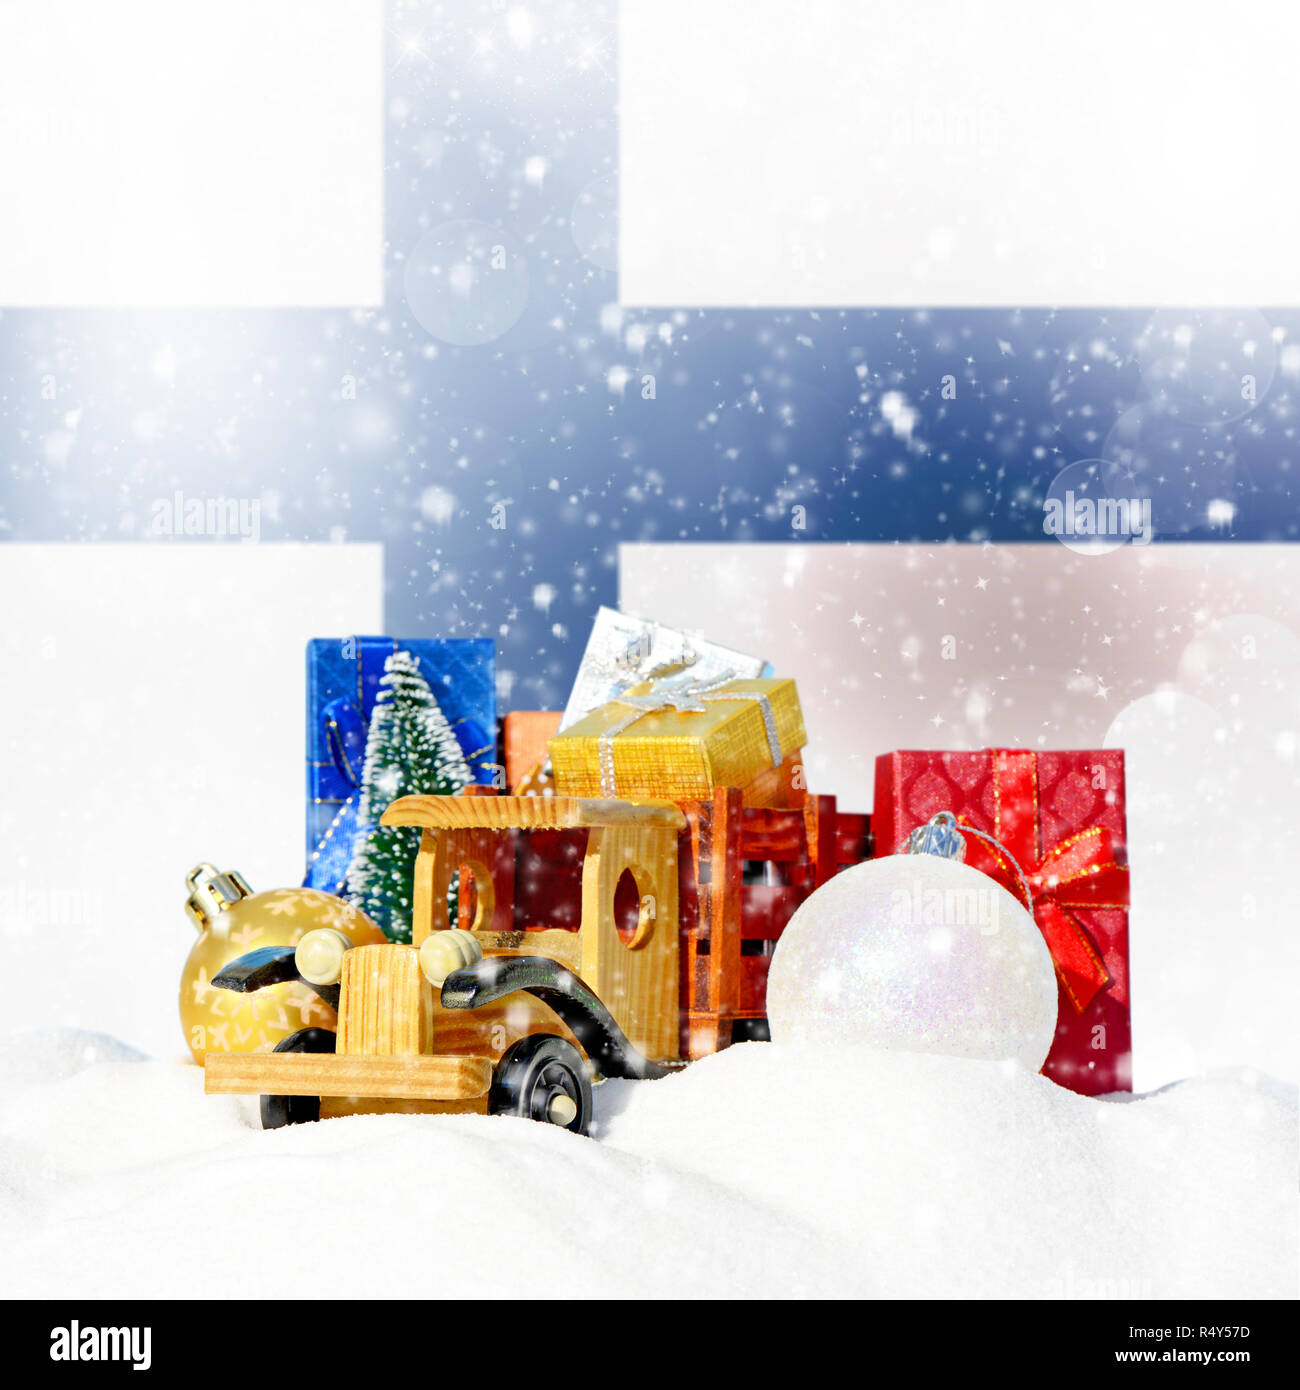 Weihnachten Hintergrund. Spielzeug-LKW mit Geschenken, Neues Jahr Tanne, Kugeln im Schneetreiben und finnische Flagge Stockfoto